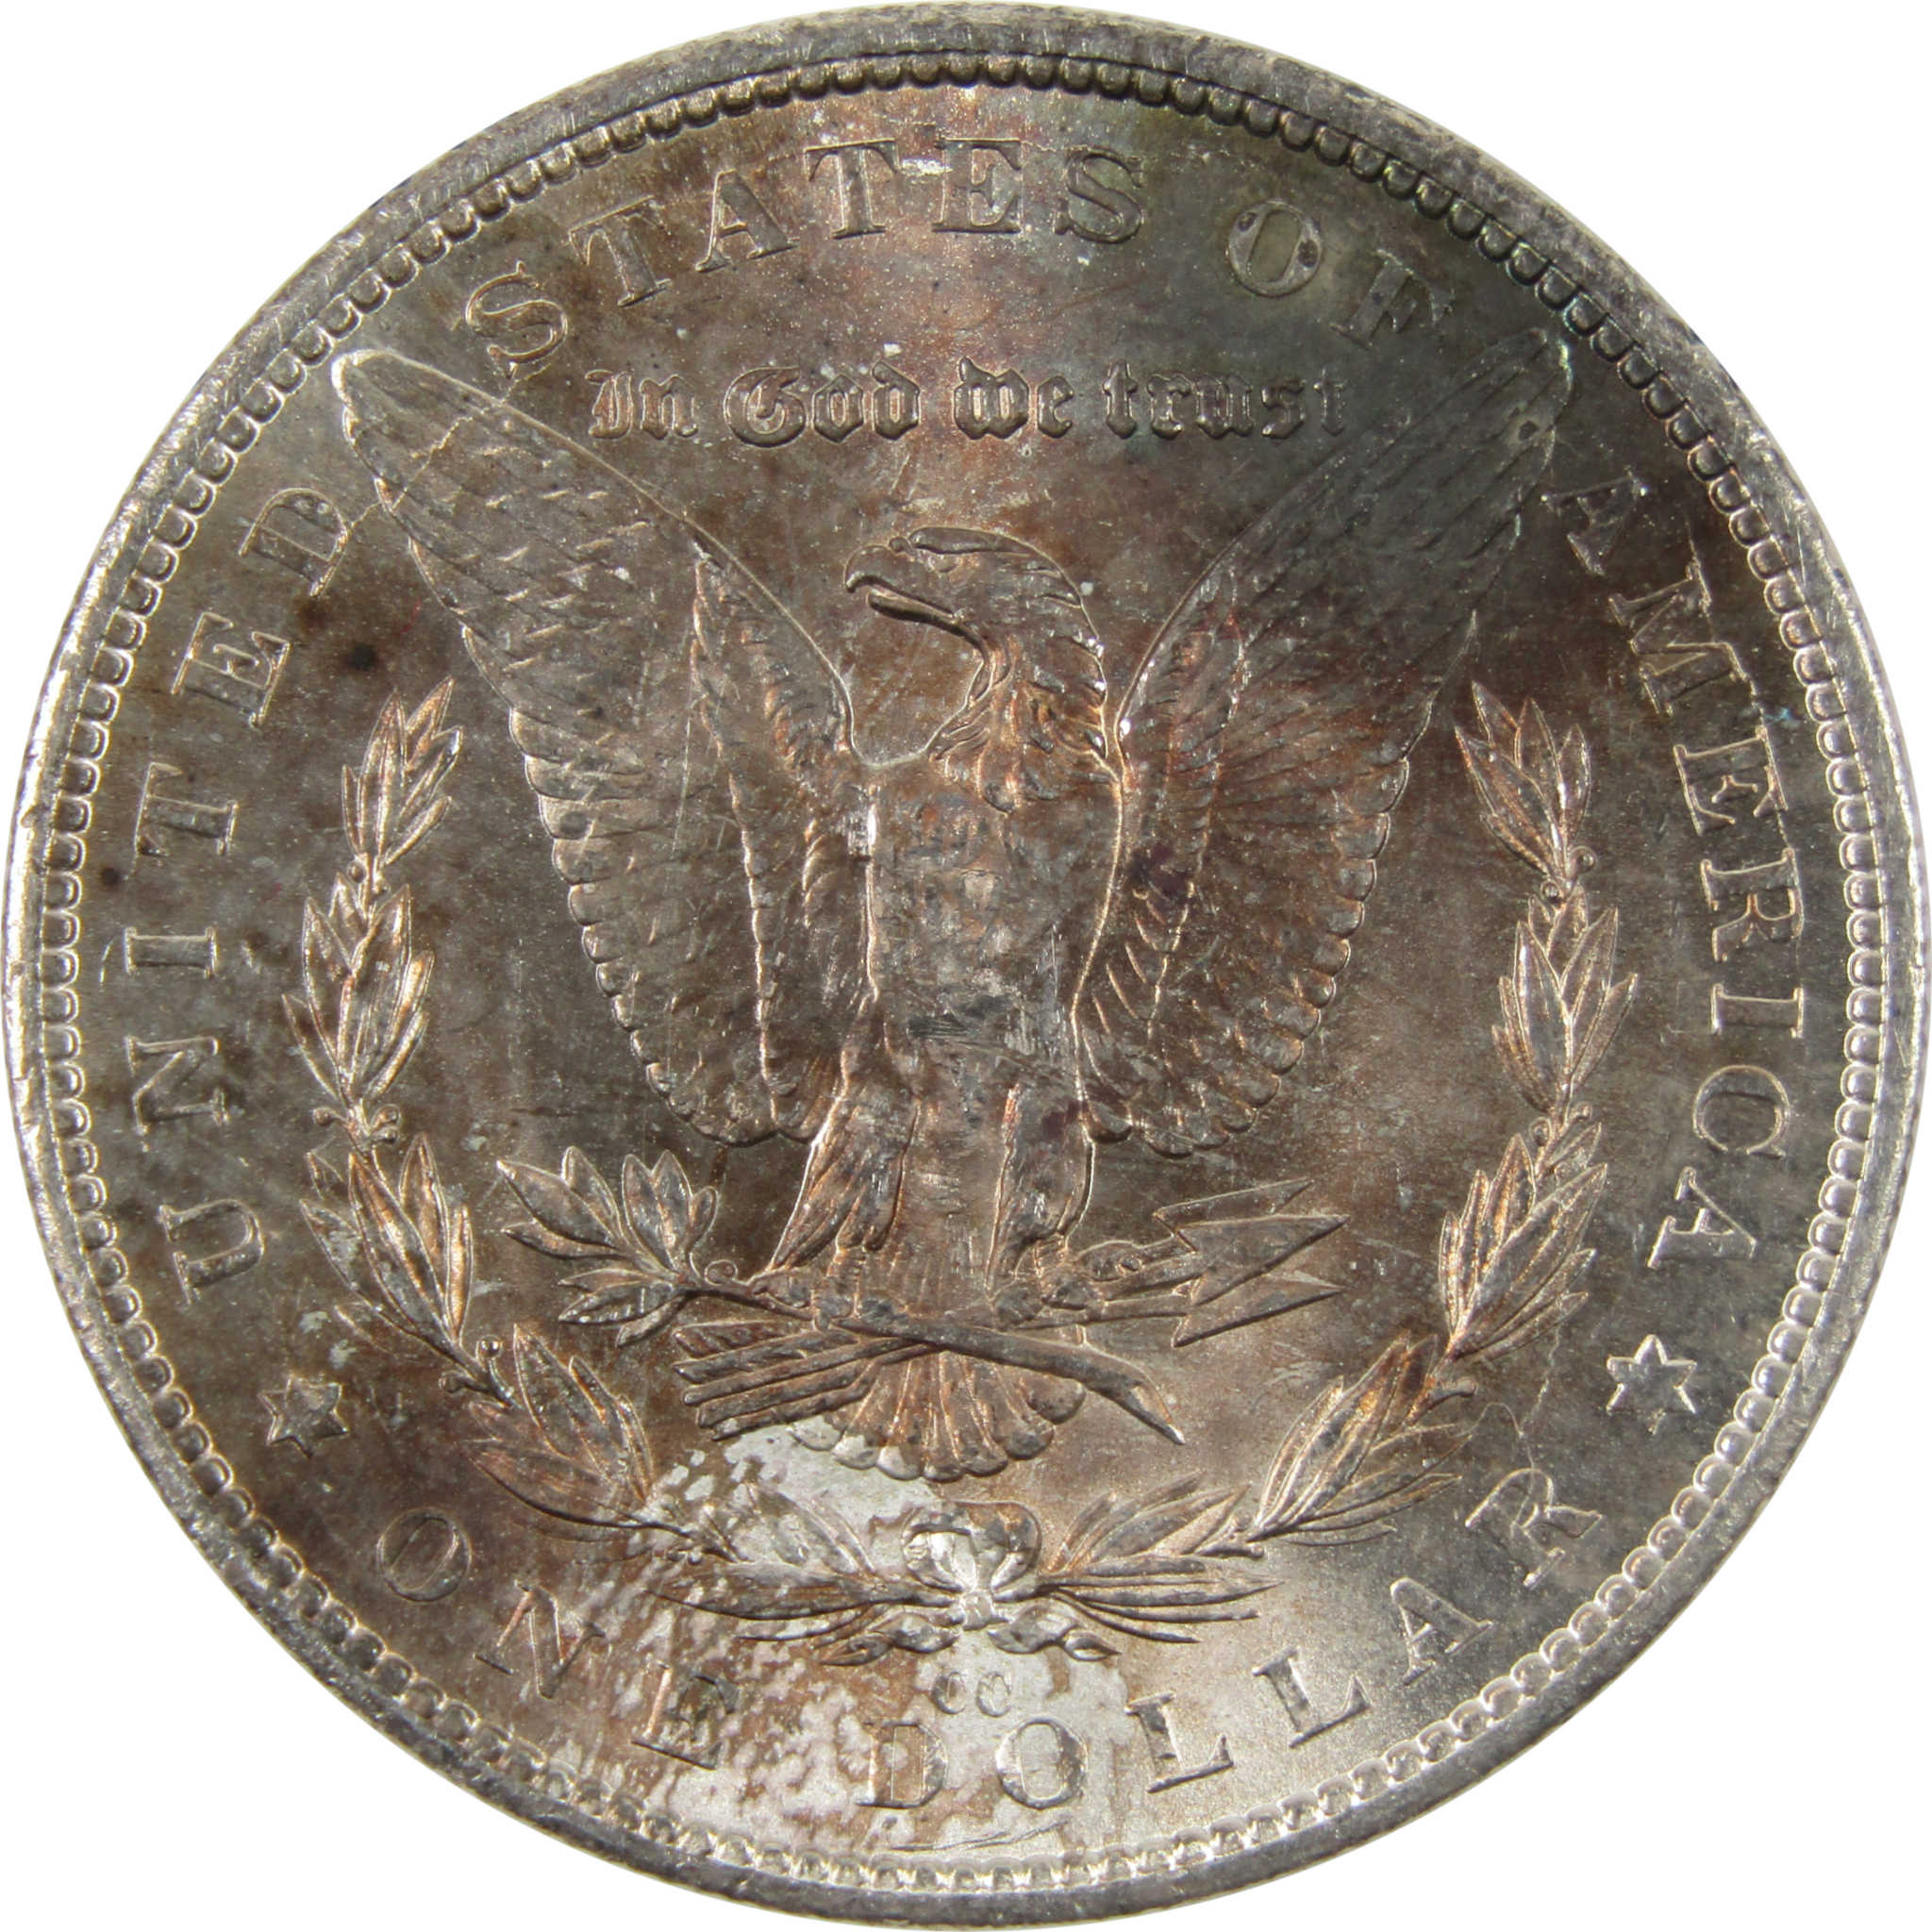 1882 CC Morgan Dollar BU Uncirculated 90% Silver $1 Coin SKU:CPC4400 - Morgan coin - Morgan silver dollar - Morgan silver dollar for sale - Profile Coins &amp; Collectibles